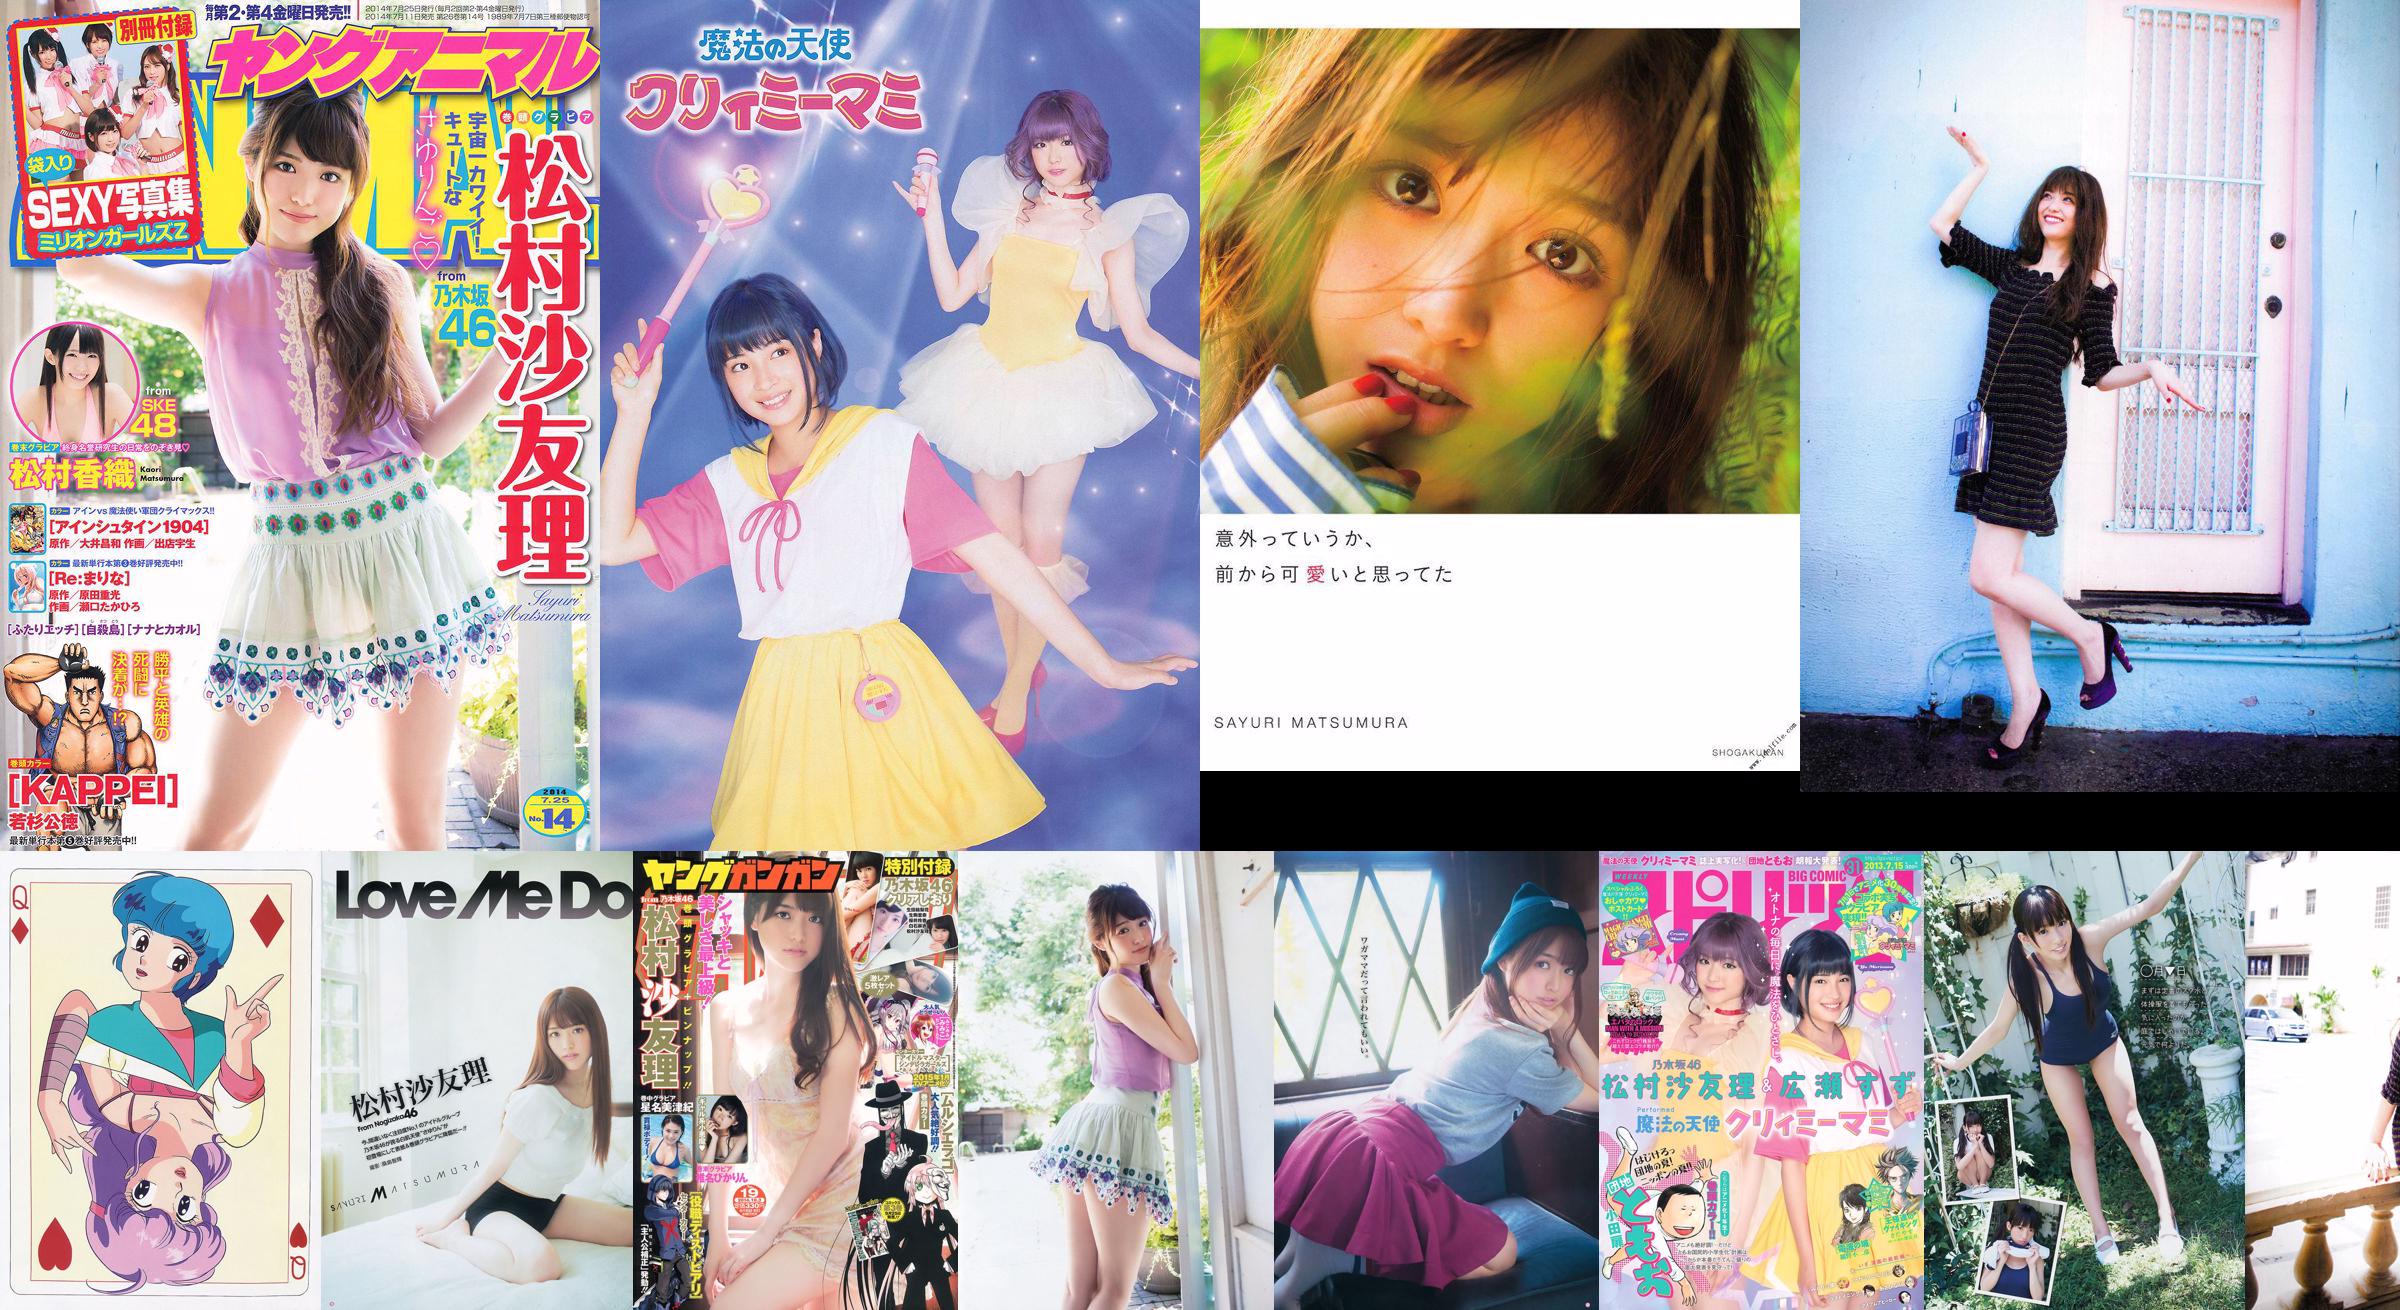 [Young Gangan] Sayuri Matsumura Hoshina Mizuki Shiina Pikarin Amaki Junio ​​de 2014 No 19 Fotografía No.434524 Página 2